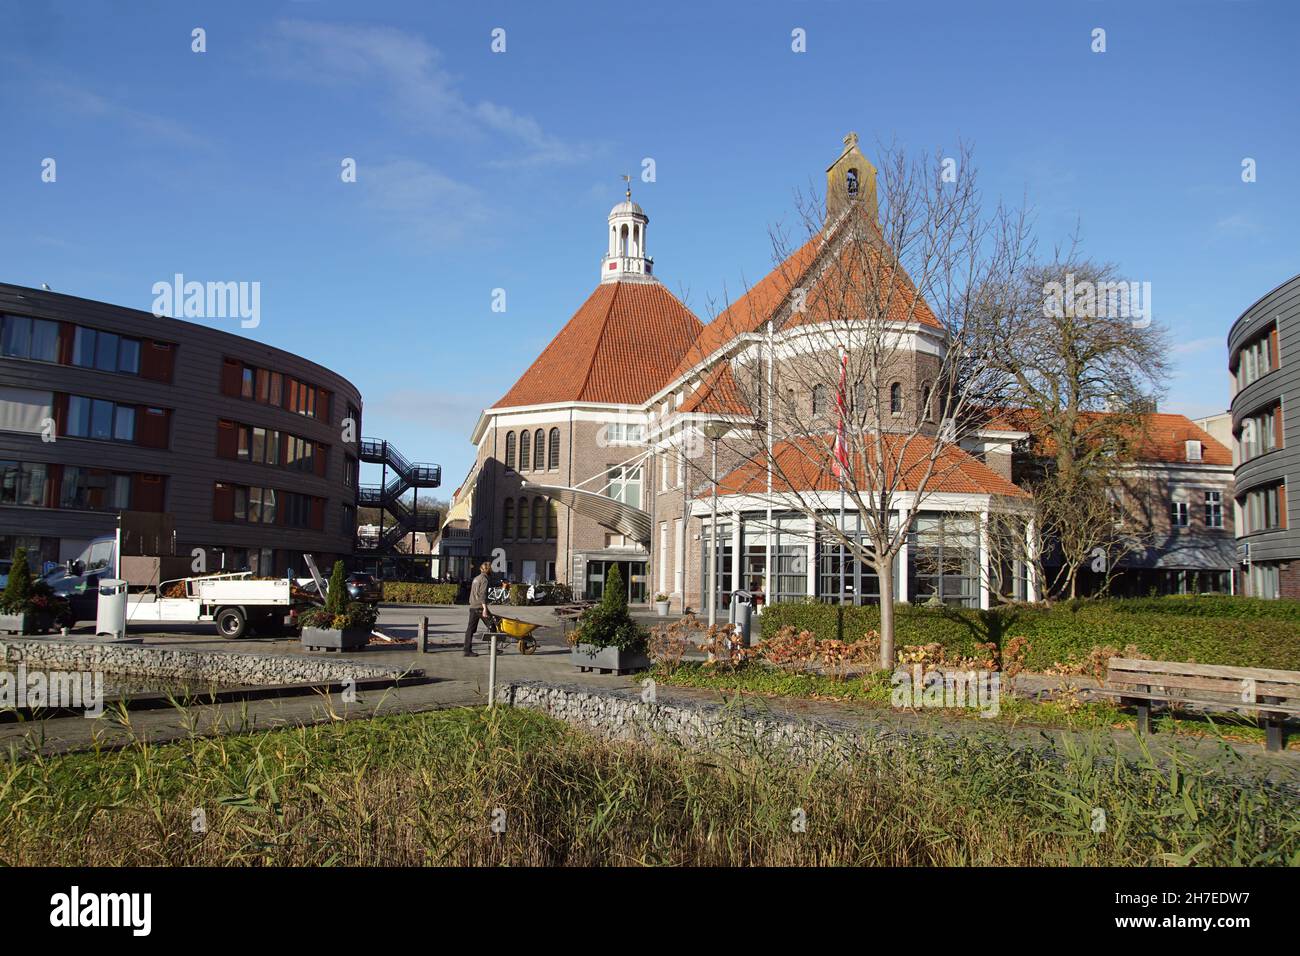 Maison de retraite néerlandaise Westerhout, Alkmaar.L'ancien hôpital  catholique Saint-Elisabeth, automne.Pays-Bas, novembre Photo Stock - Alamy